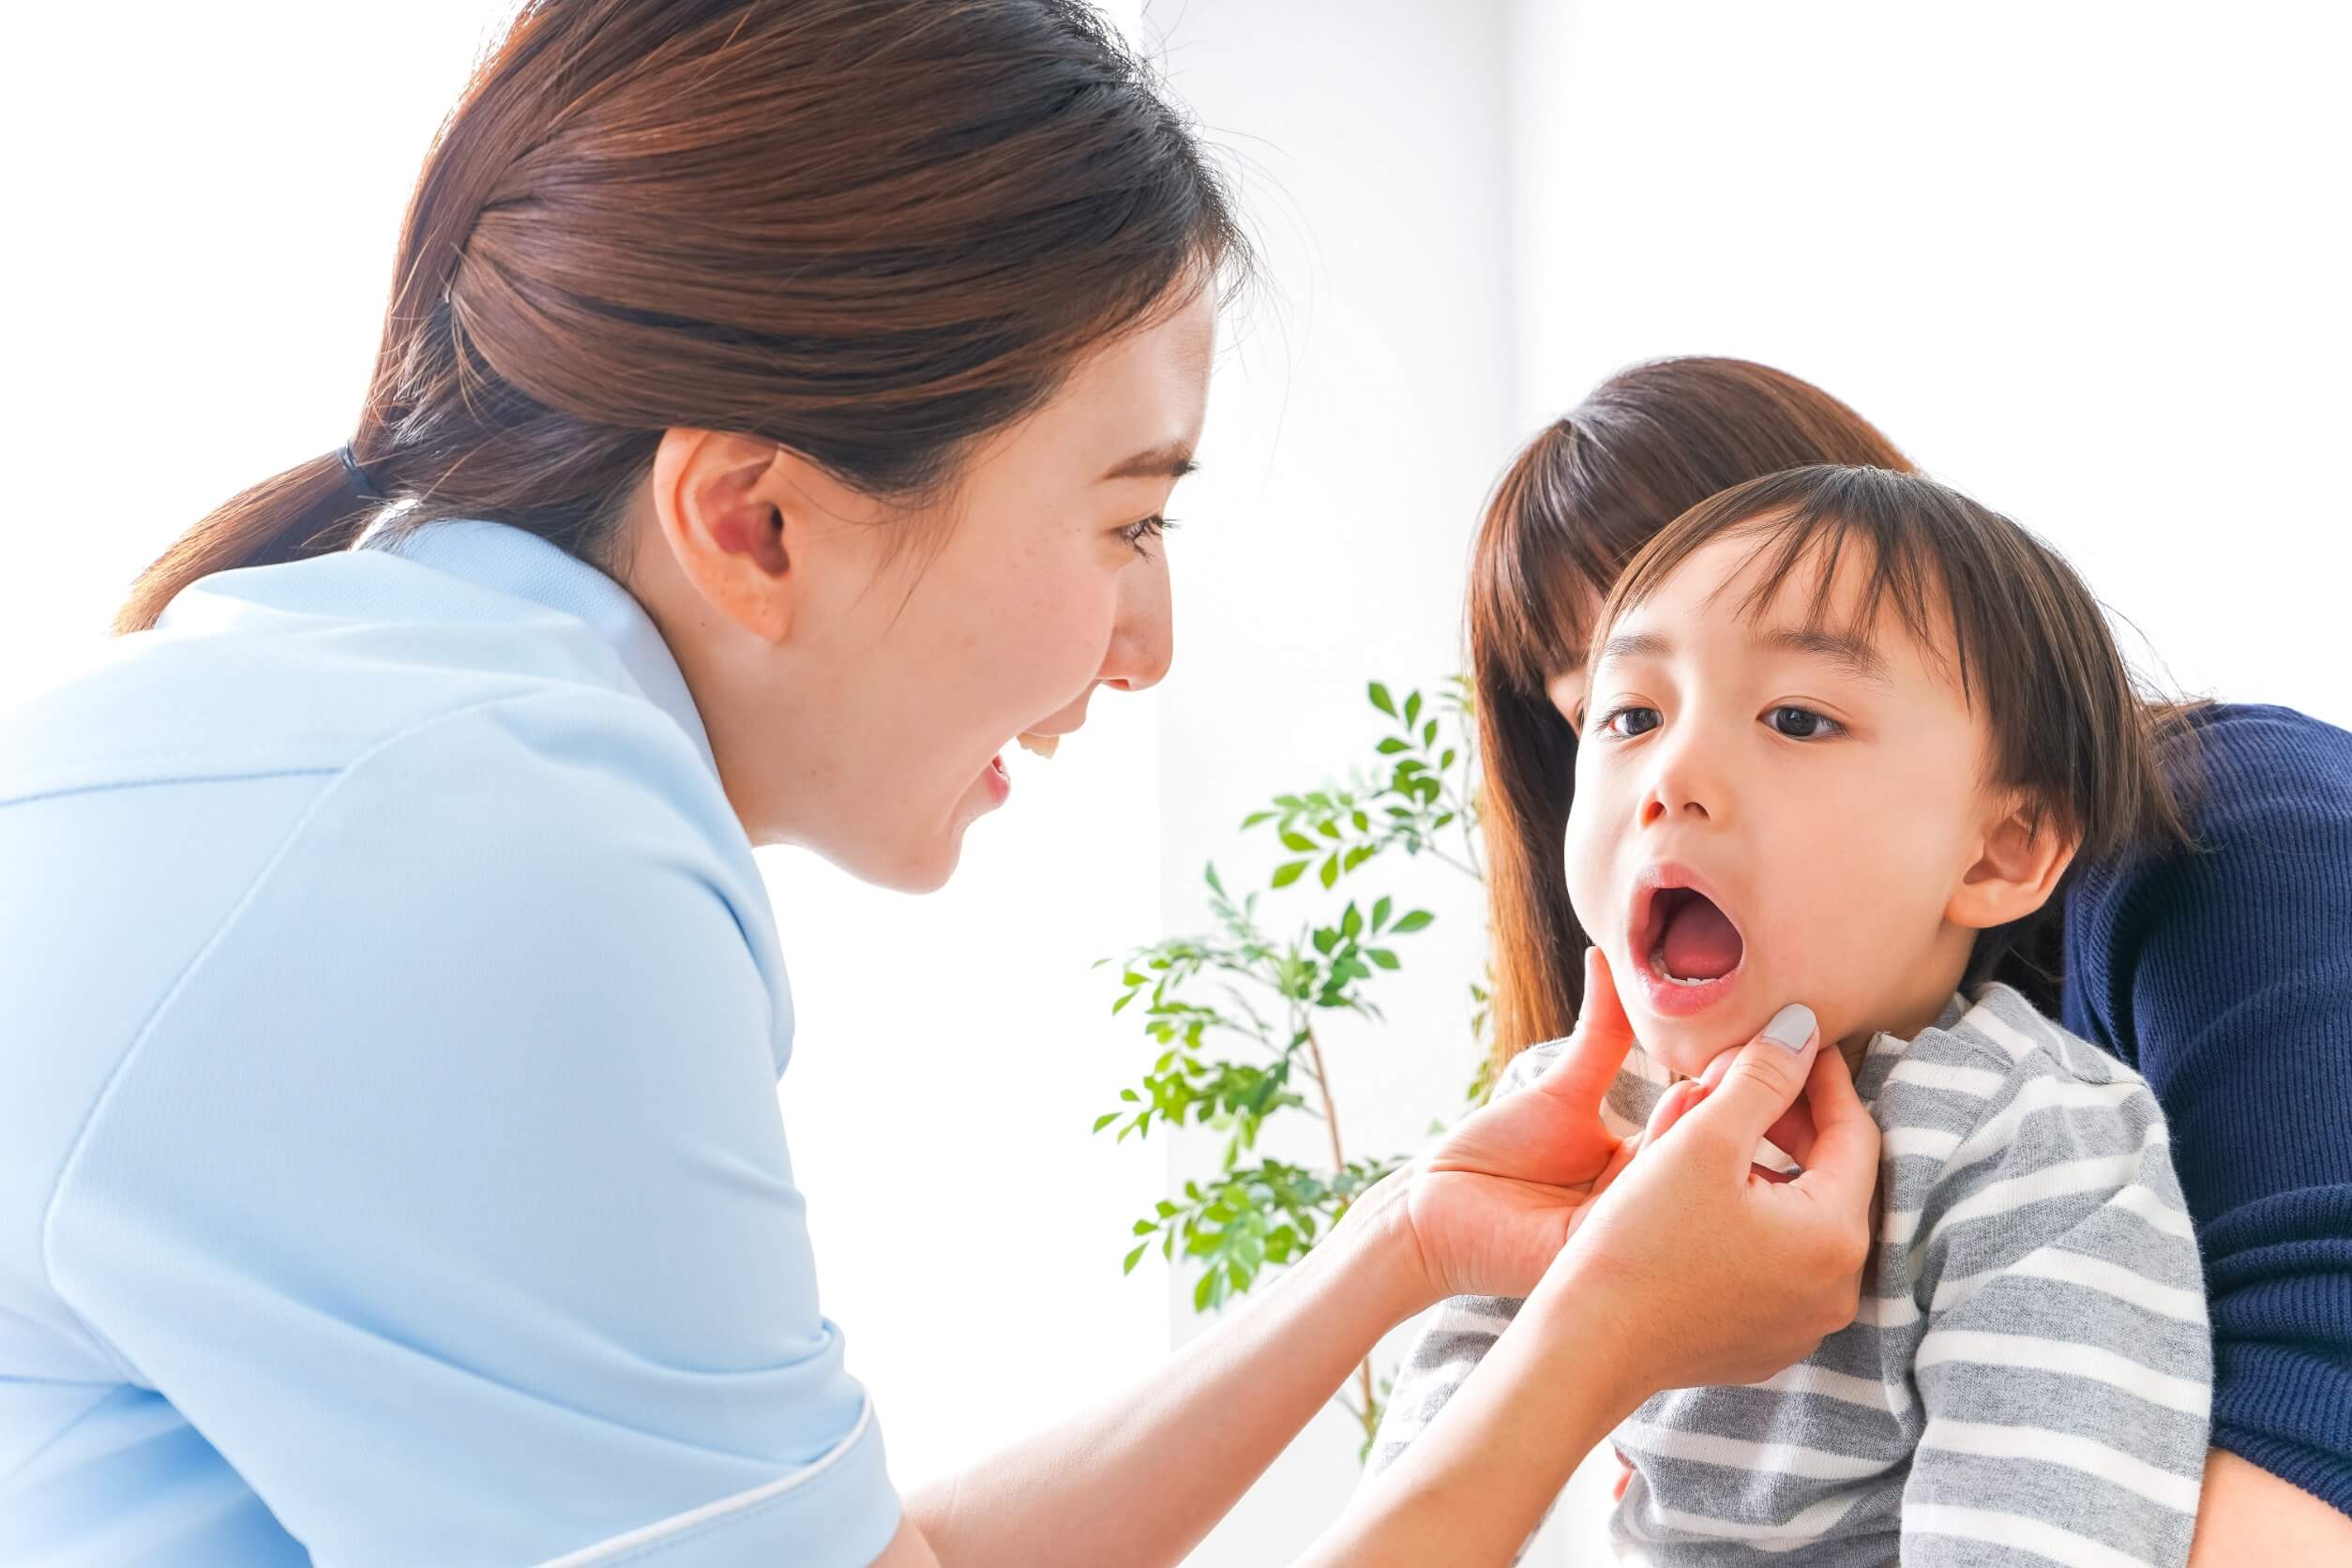 Extrações dentárias infantis requerem um profissional